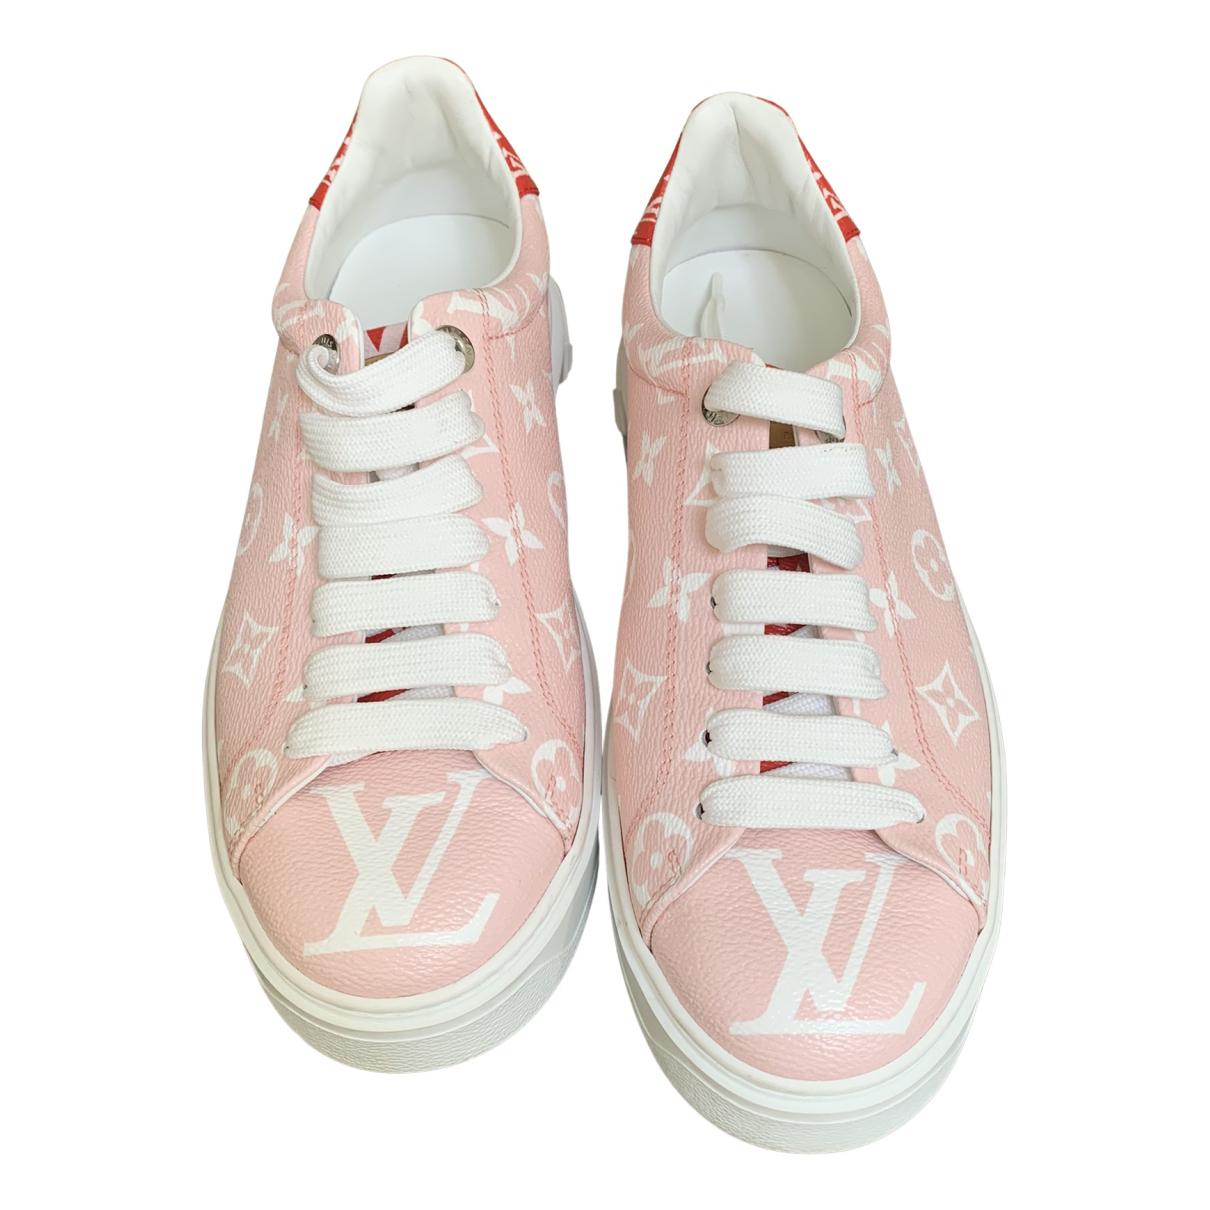 Louis Vuitton Shoes for Women - Vestiaire Collective